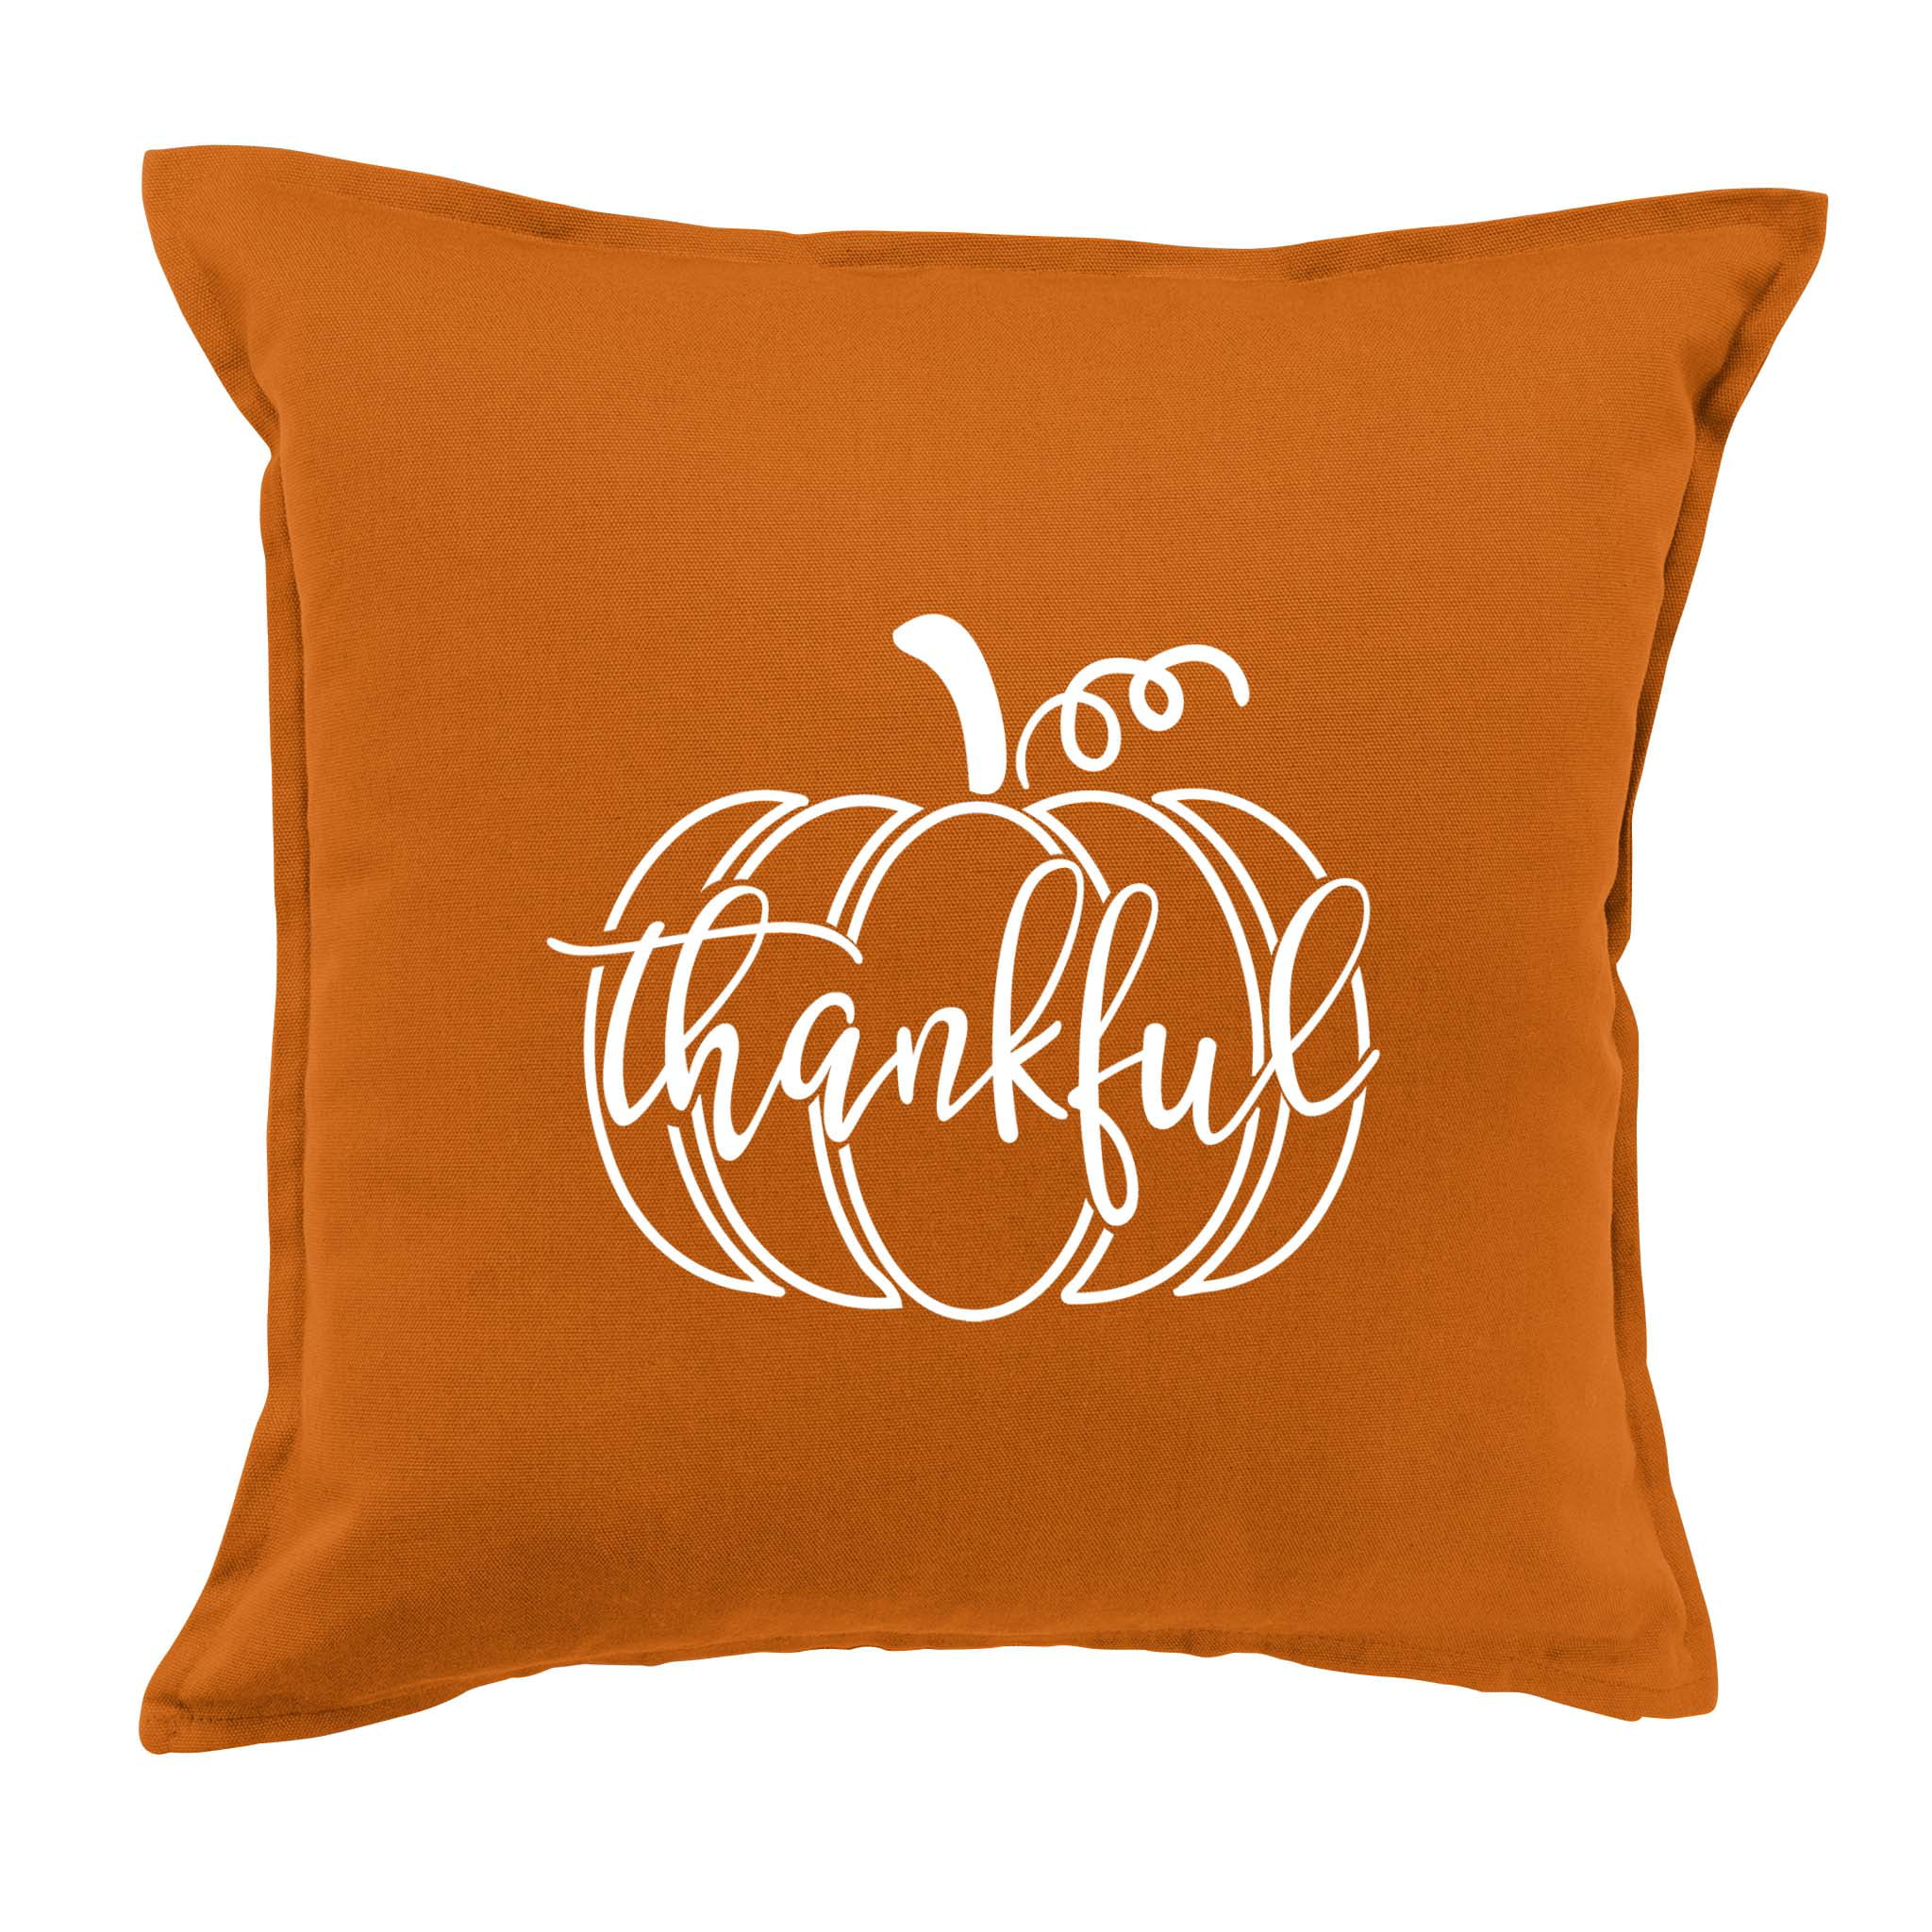 Details about   Thankful Pumpkin Throw Pillow 